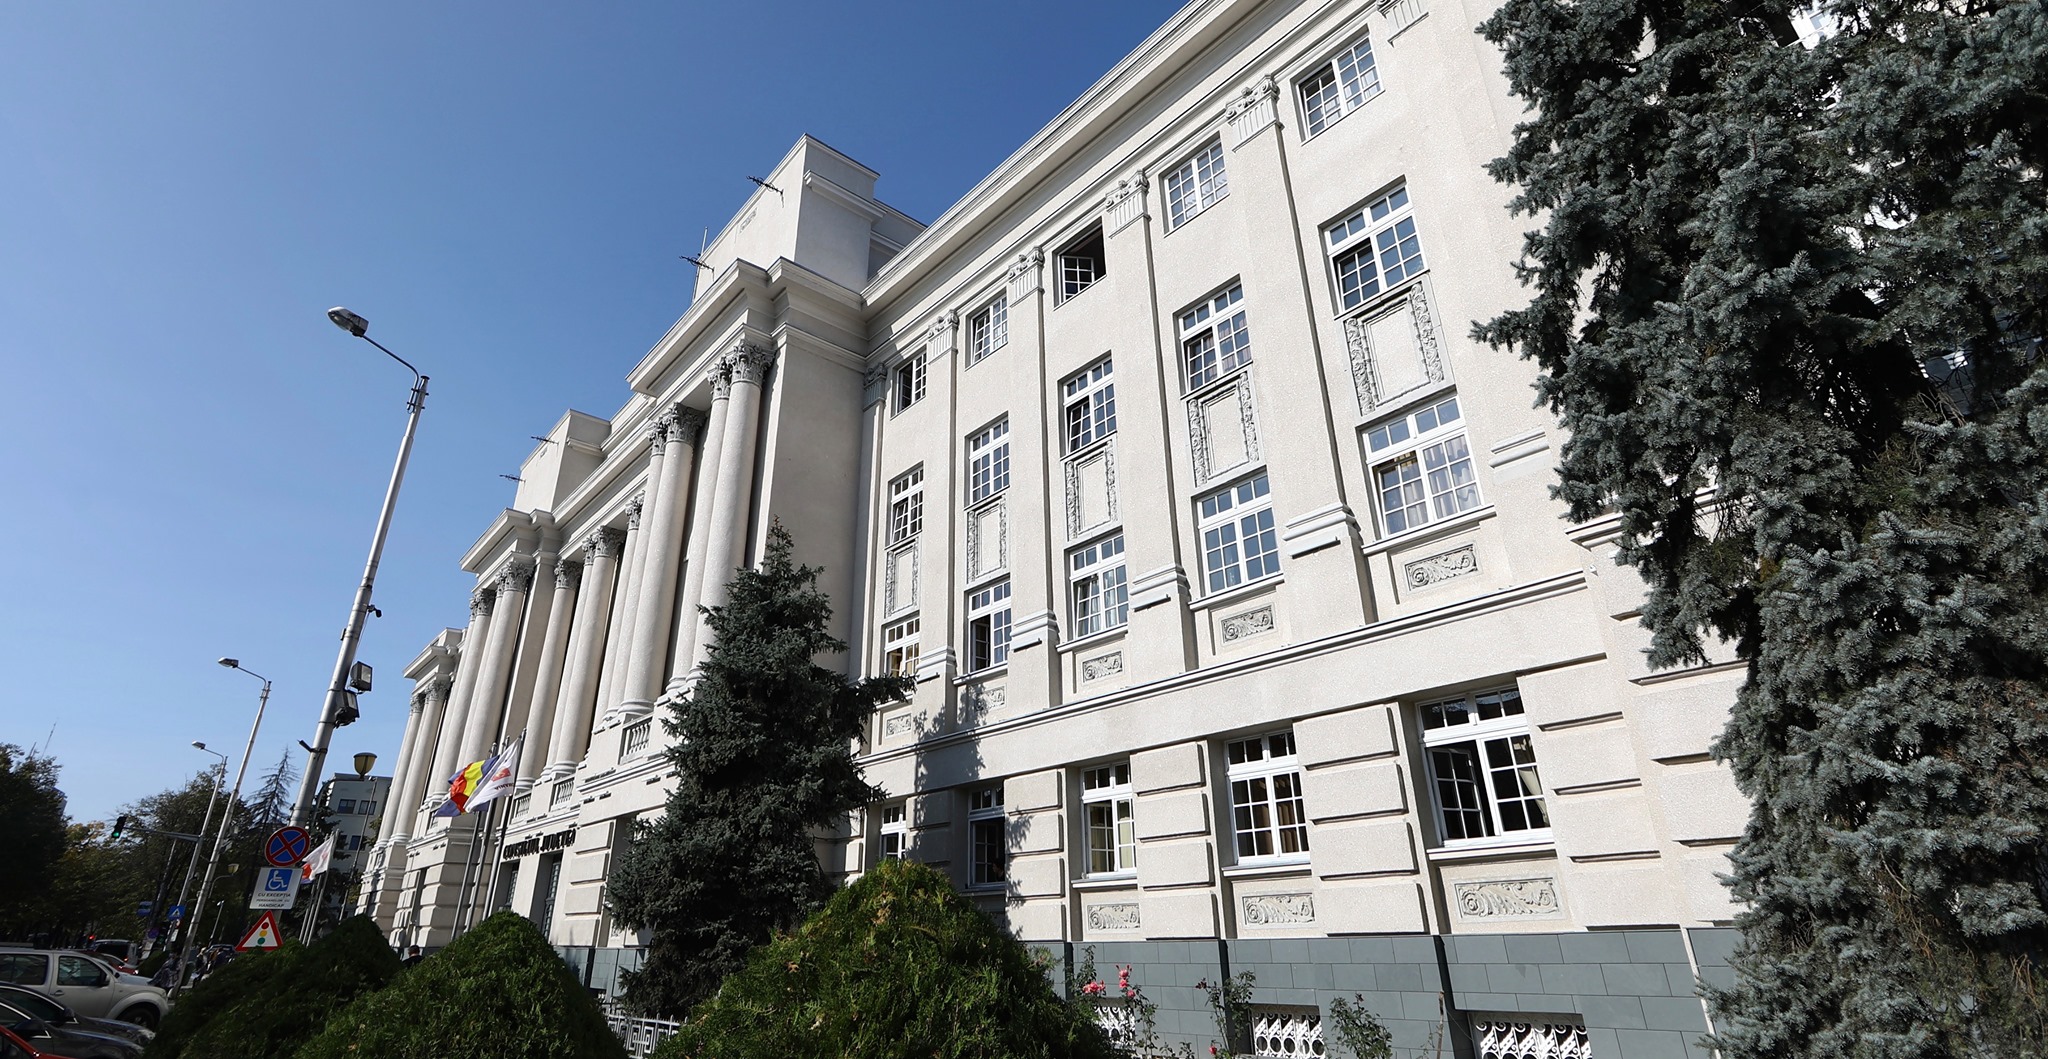 Majorare de fonduri pentru casele de tip familial construite de administrația județeană, în Timiș